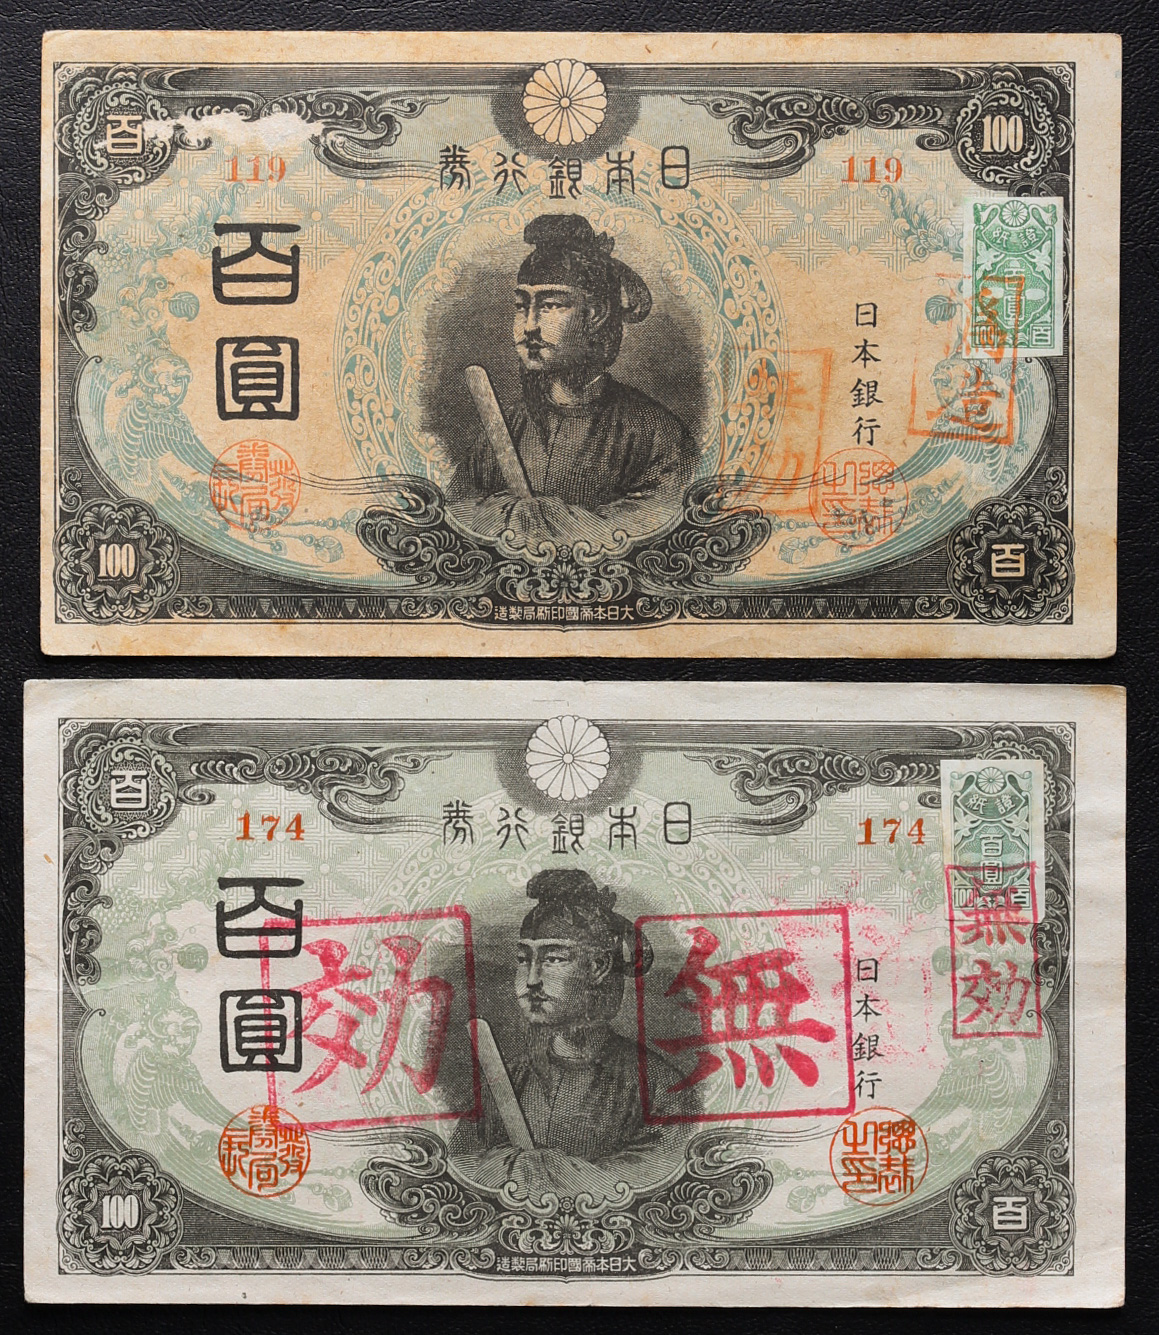 無効印・偽造印 ３次１００円札（改正不換紙幣）証紙（偽造印）